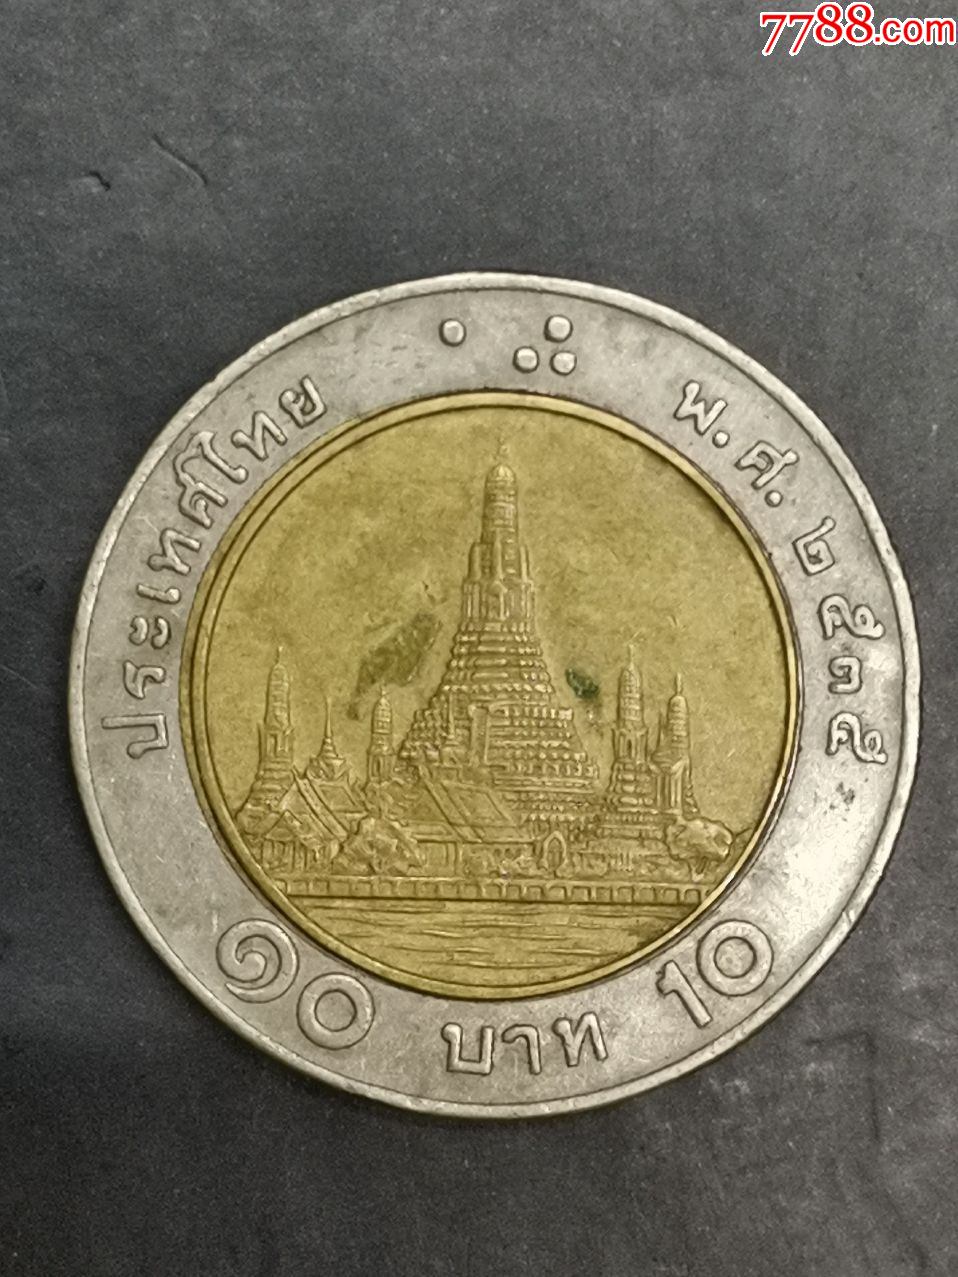 泰国10泰铢纪念硬币图片